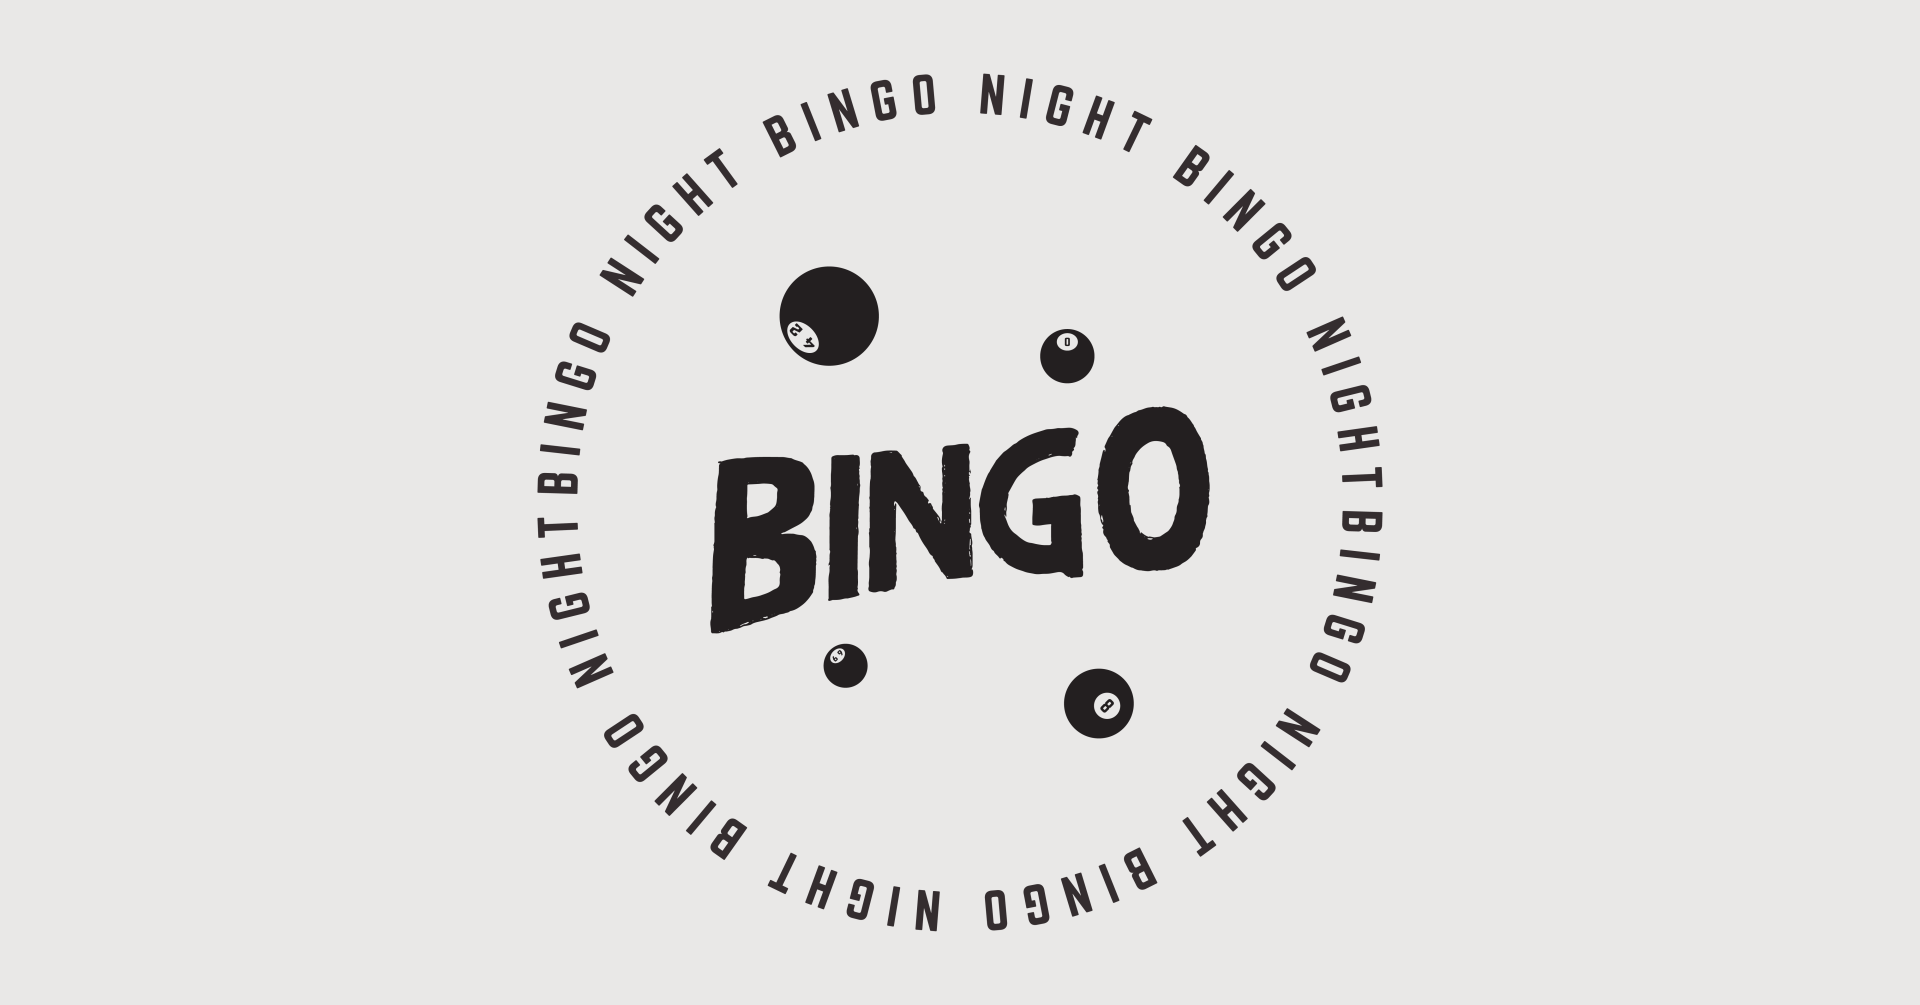 Music Bingo Night 